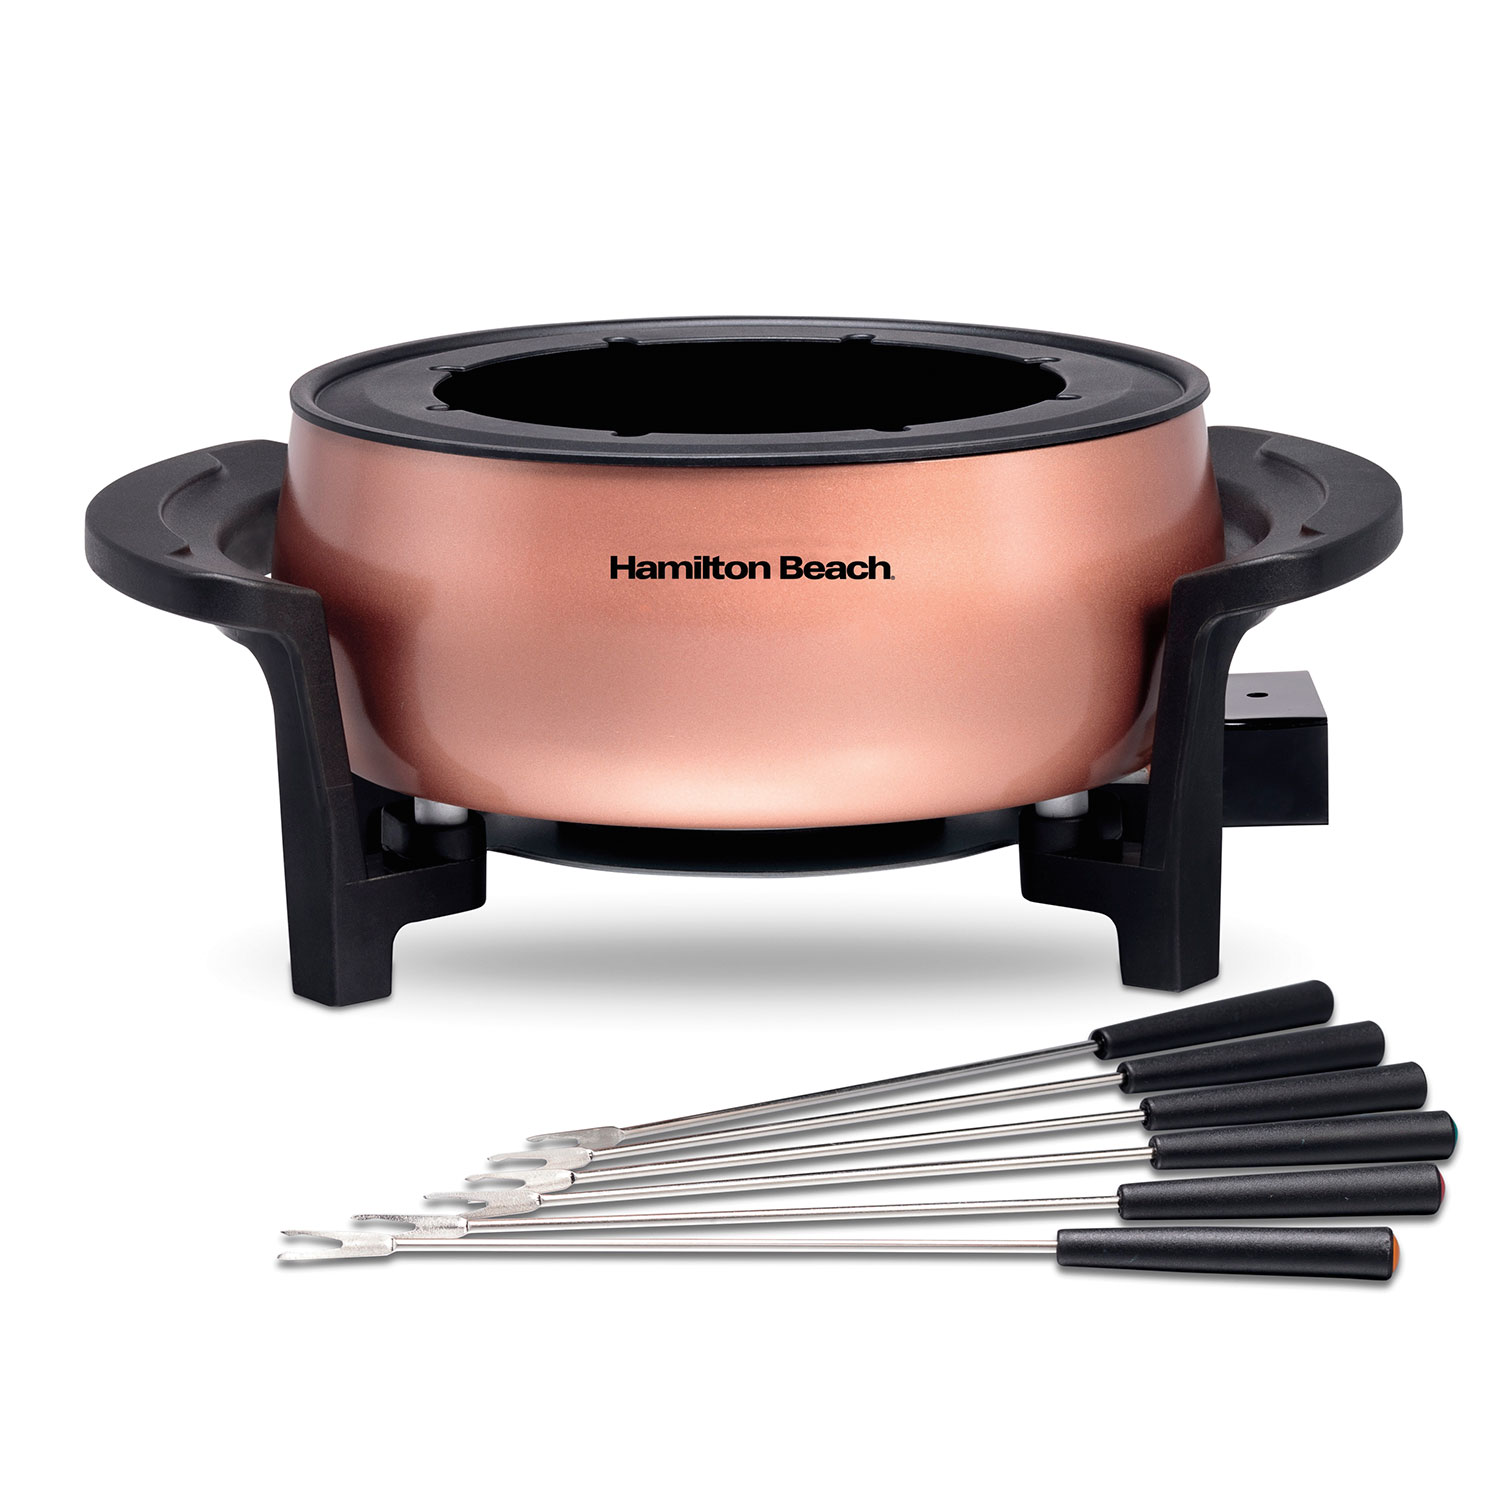 Fondue Pot 3 Quart / 2.8 Liter Capacity, Copper (86201)